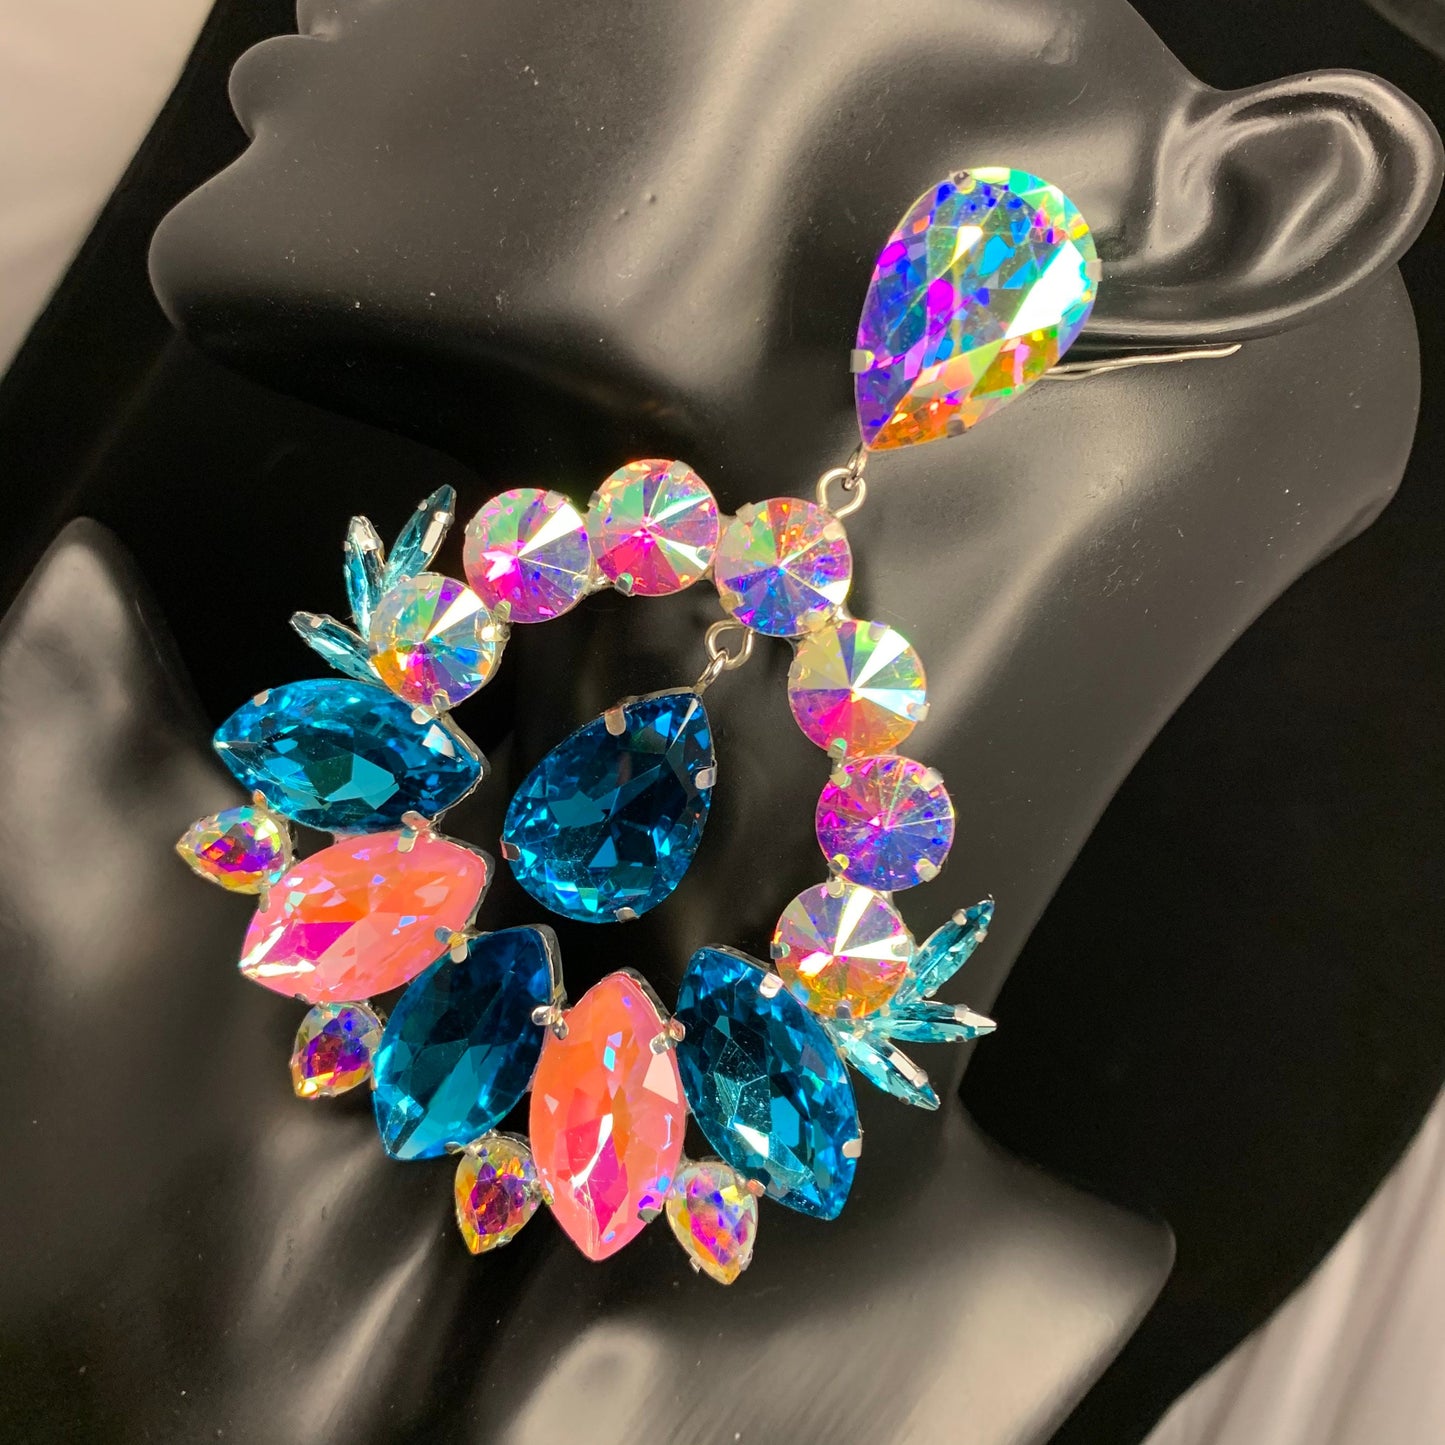 Crystal Hoop Earrings / Clip On or Pierced / Statement Earrings / Crystal Jewelry / Dress Earrings / Drag Queen